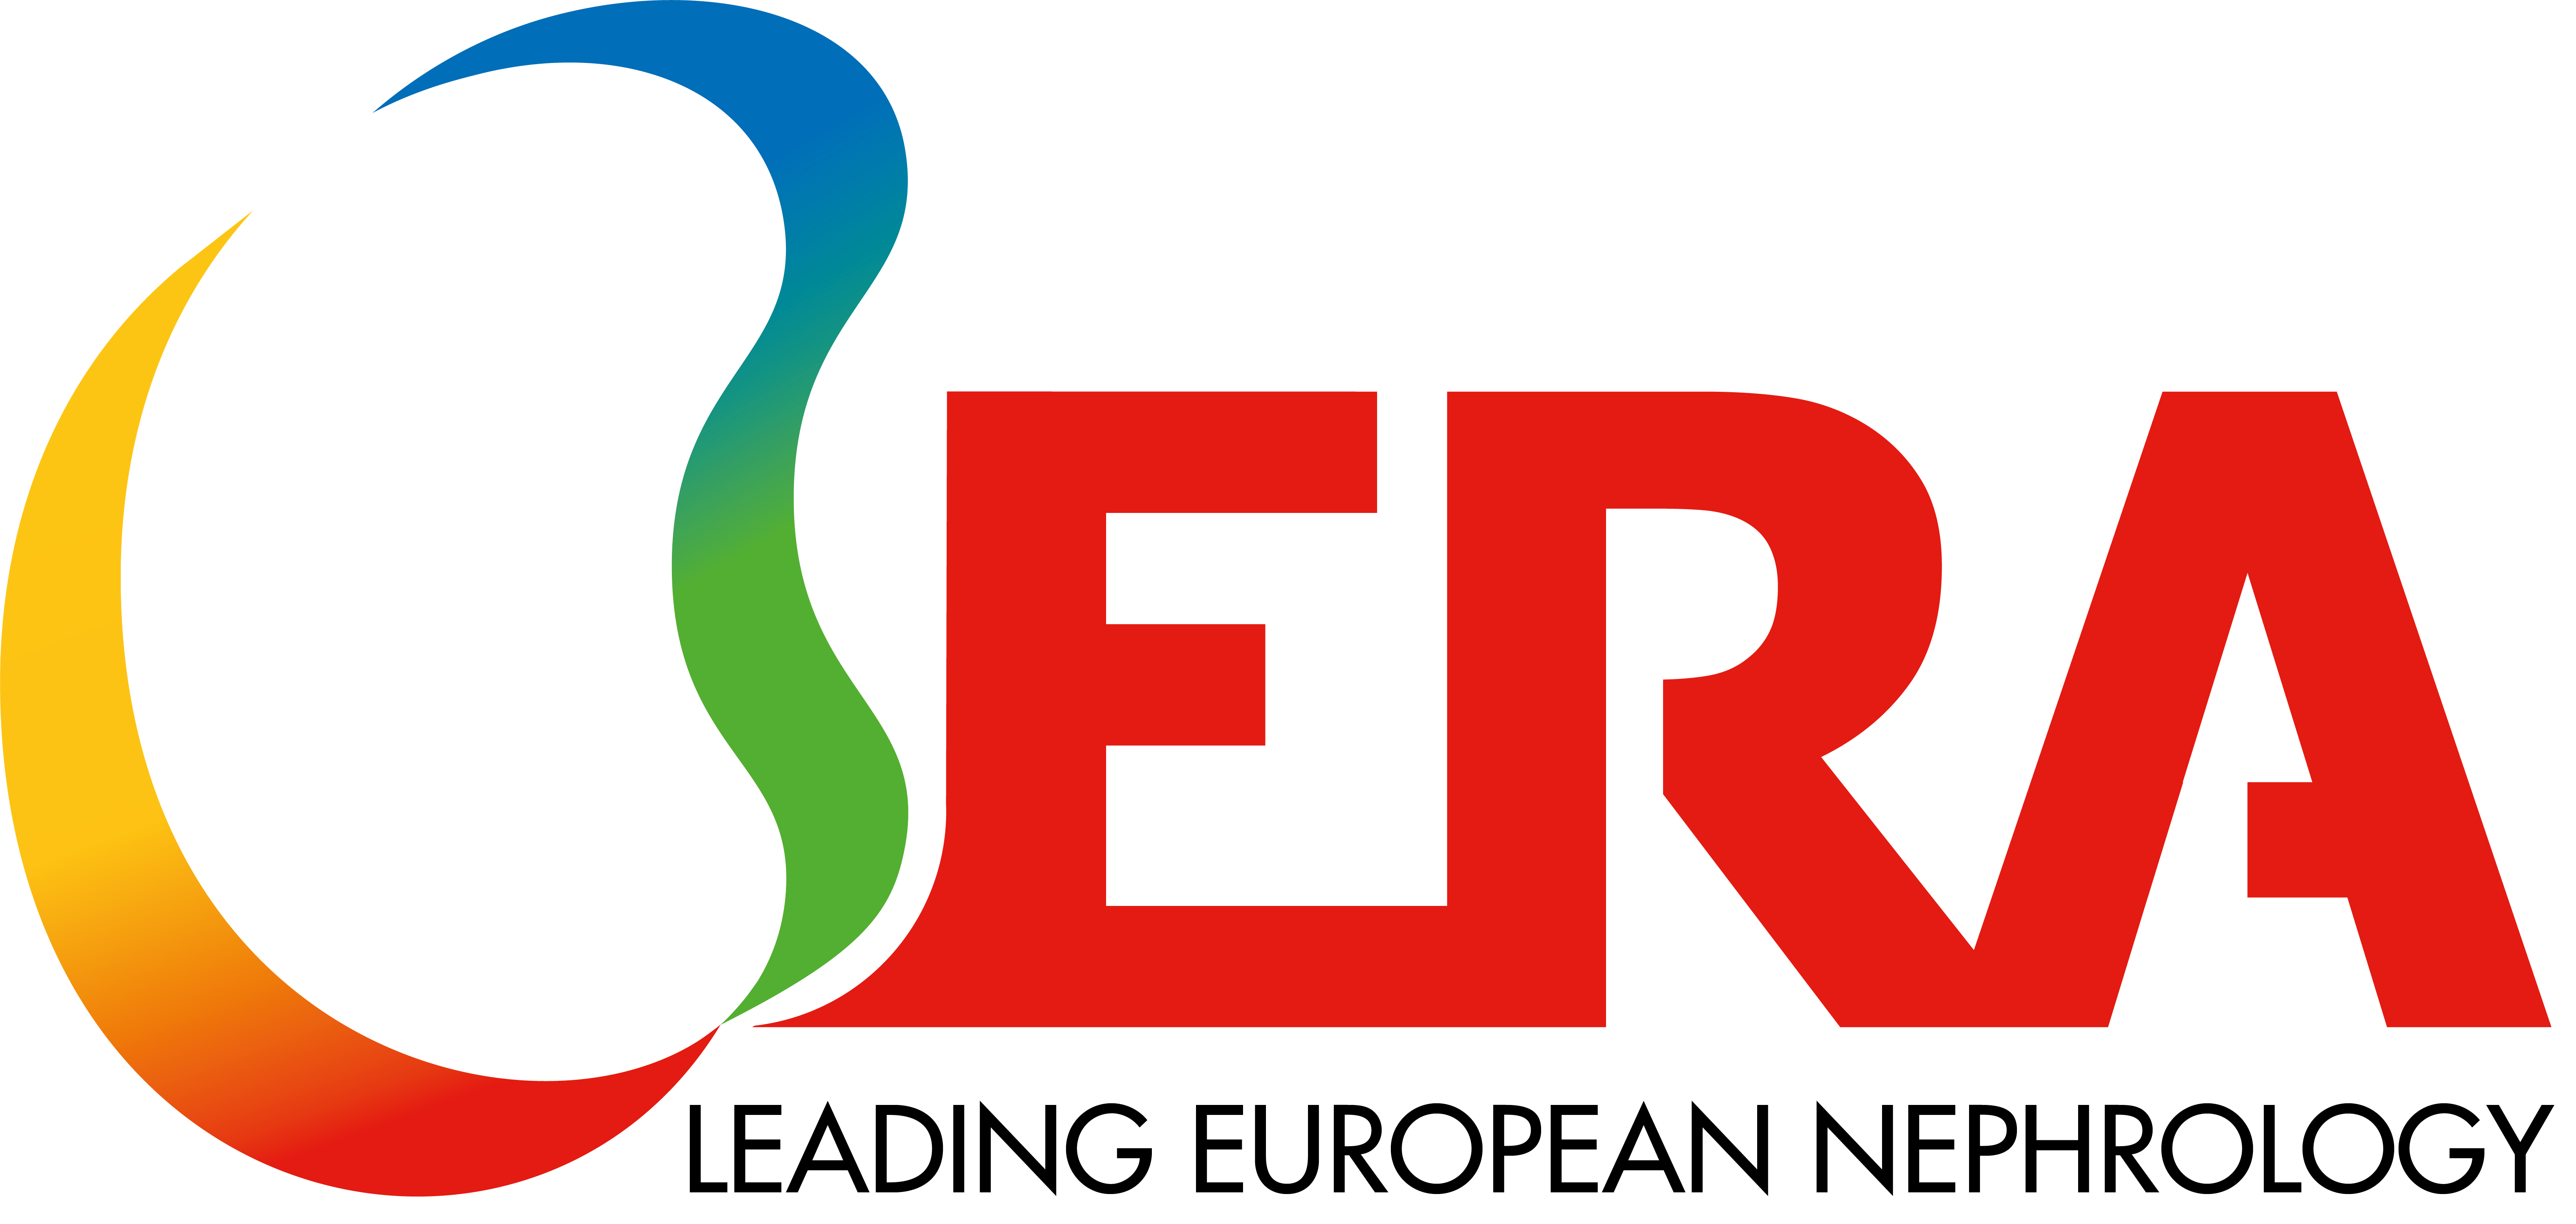 ERA-EDTA logo